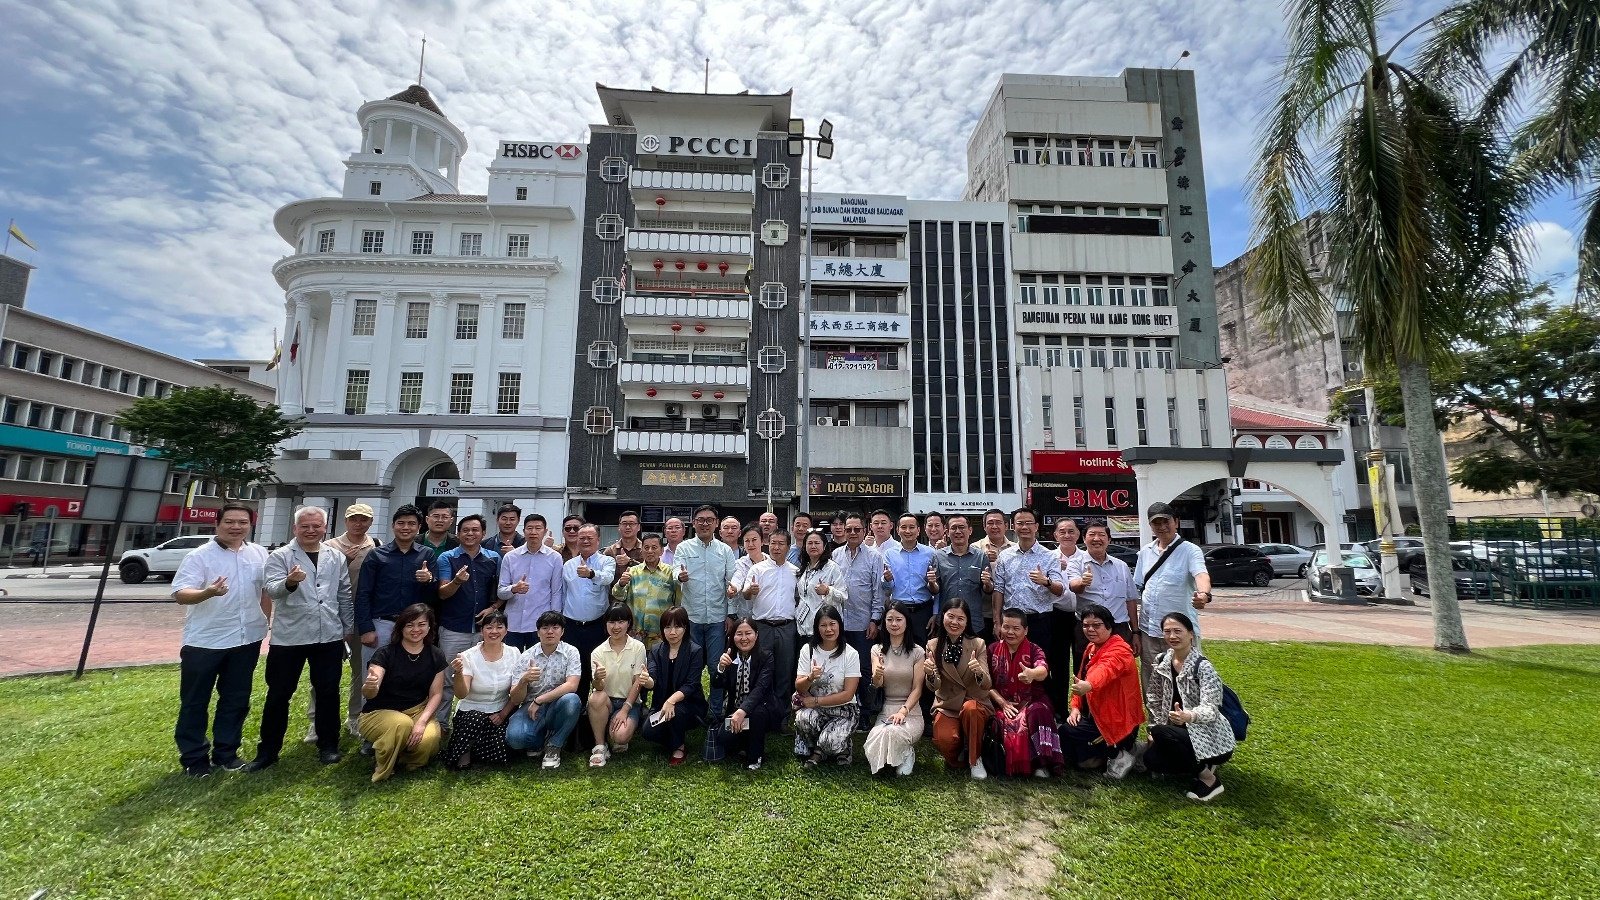 霹中总与中国昆明国际大健康马来西亚访问团，在霹中总大厦前合影；次排左8起是陈新庆及贺今朝。